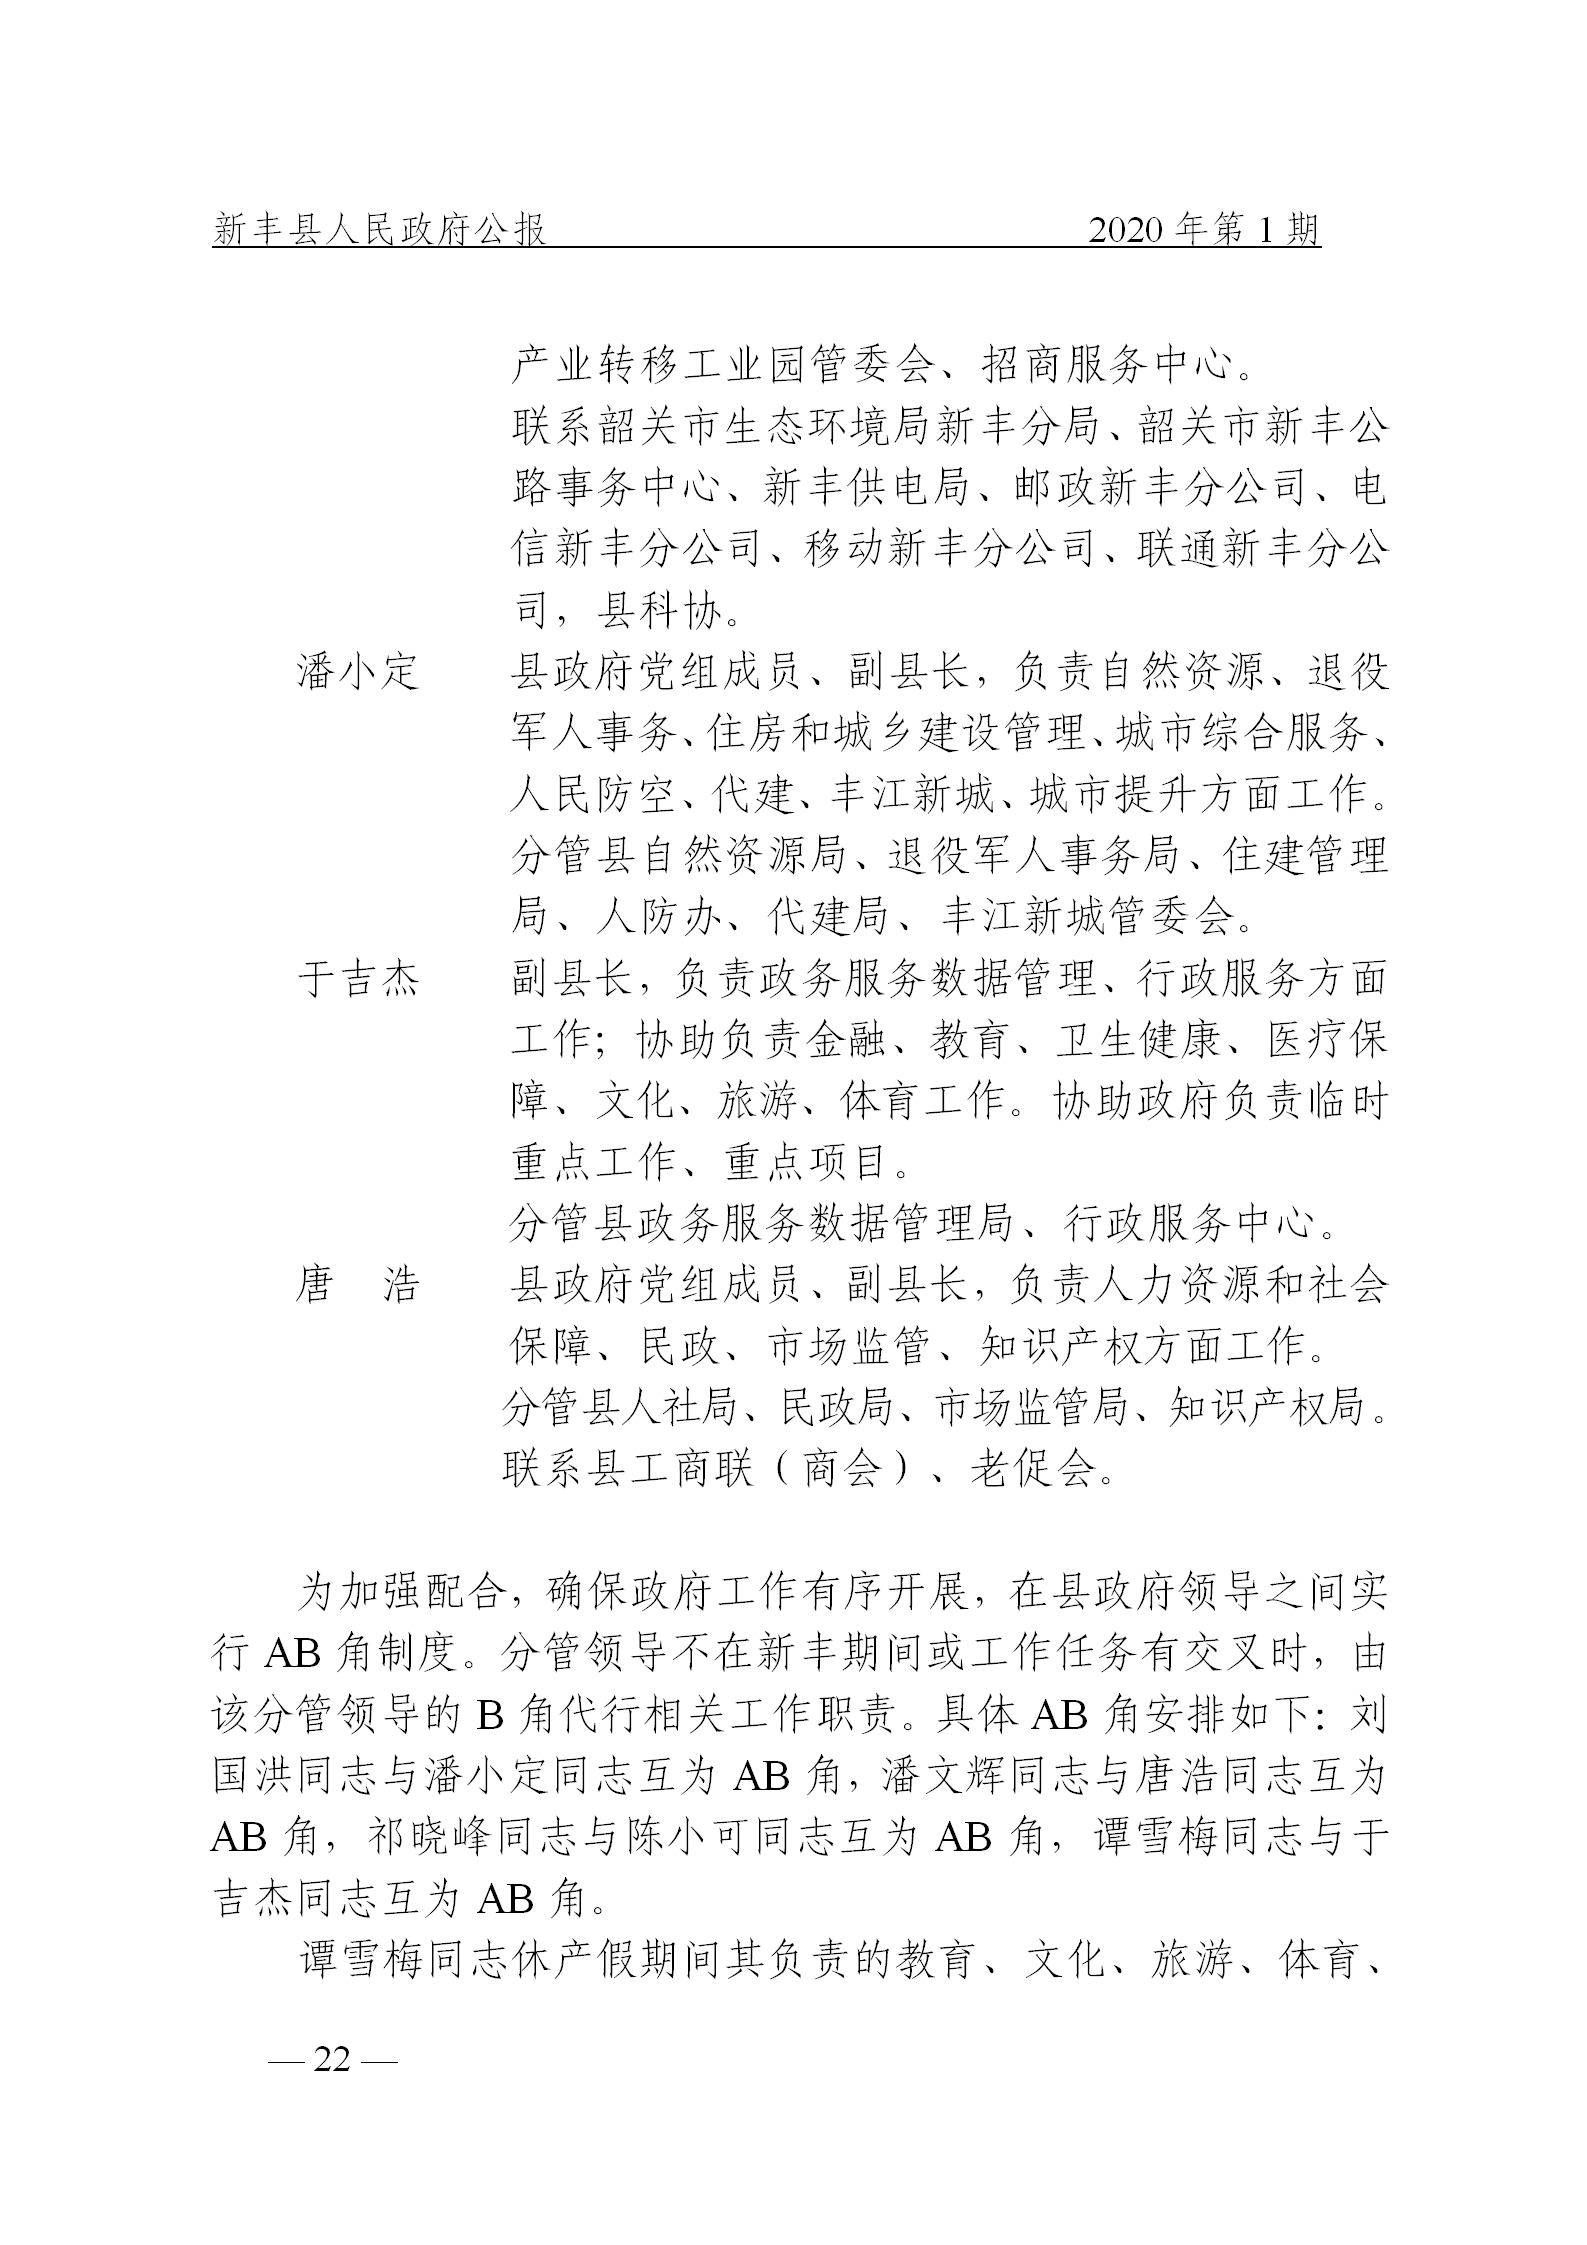 《新丰县人民政府公报》2020年第1期(1)_22.png